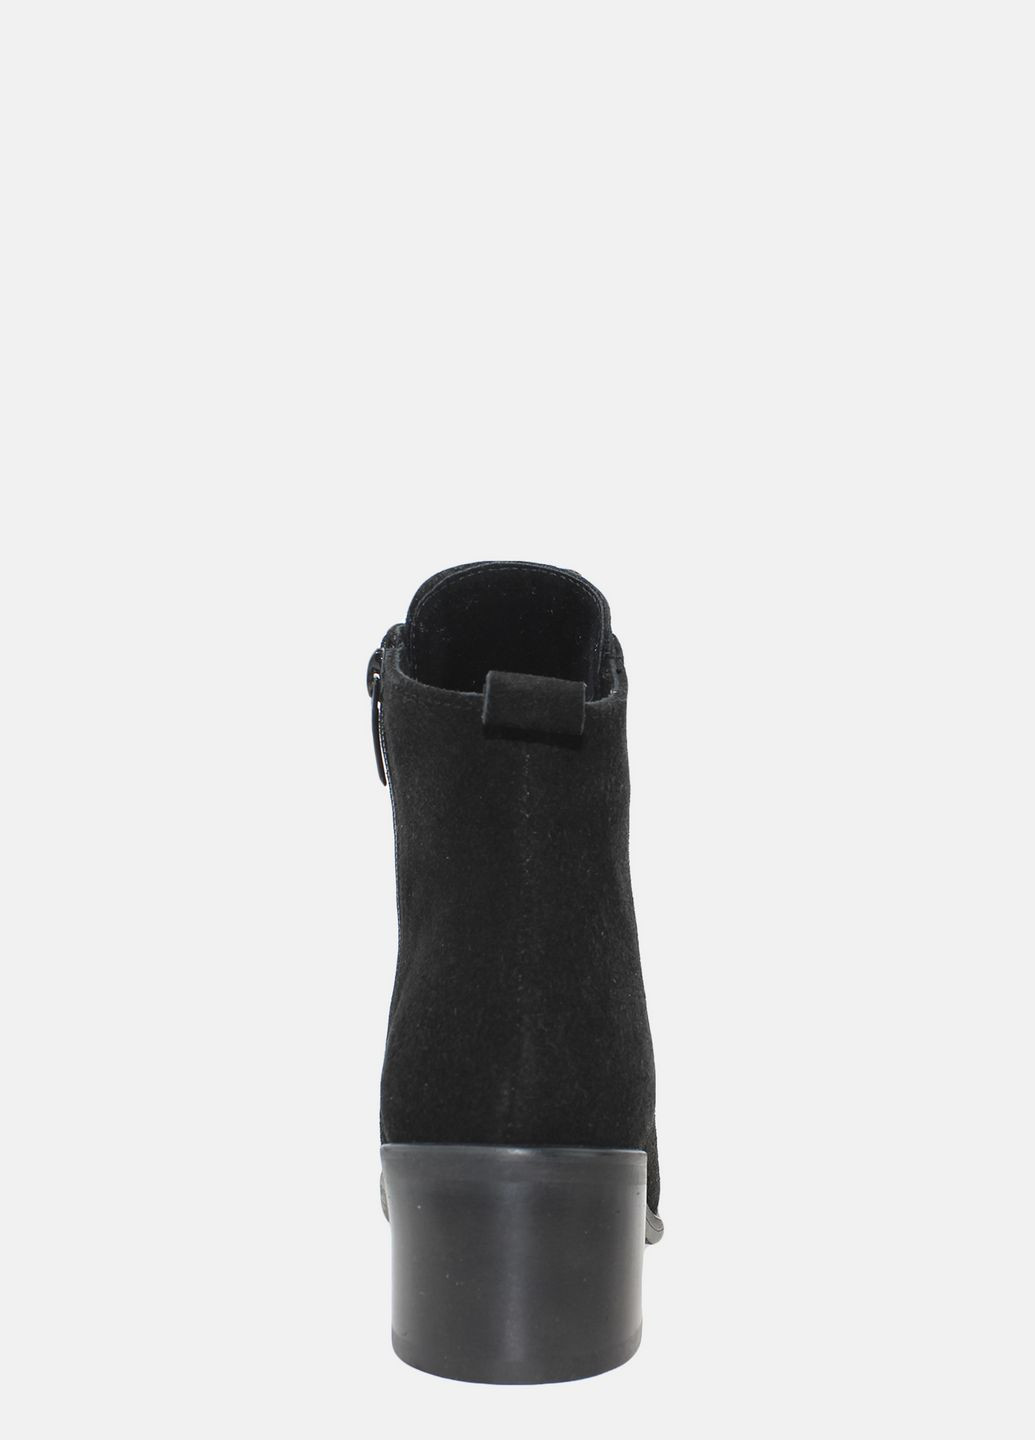 Осенние ботинки ra4034-11 черный Azatti из натуральной замши